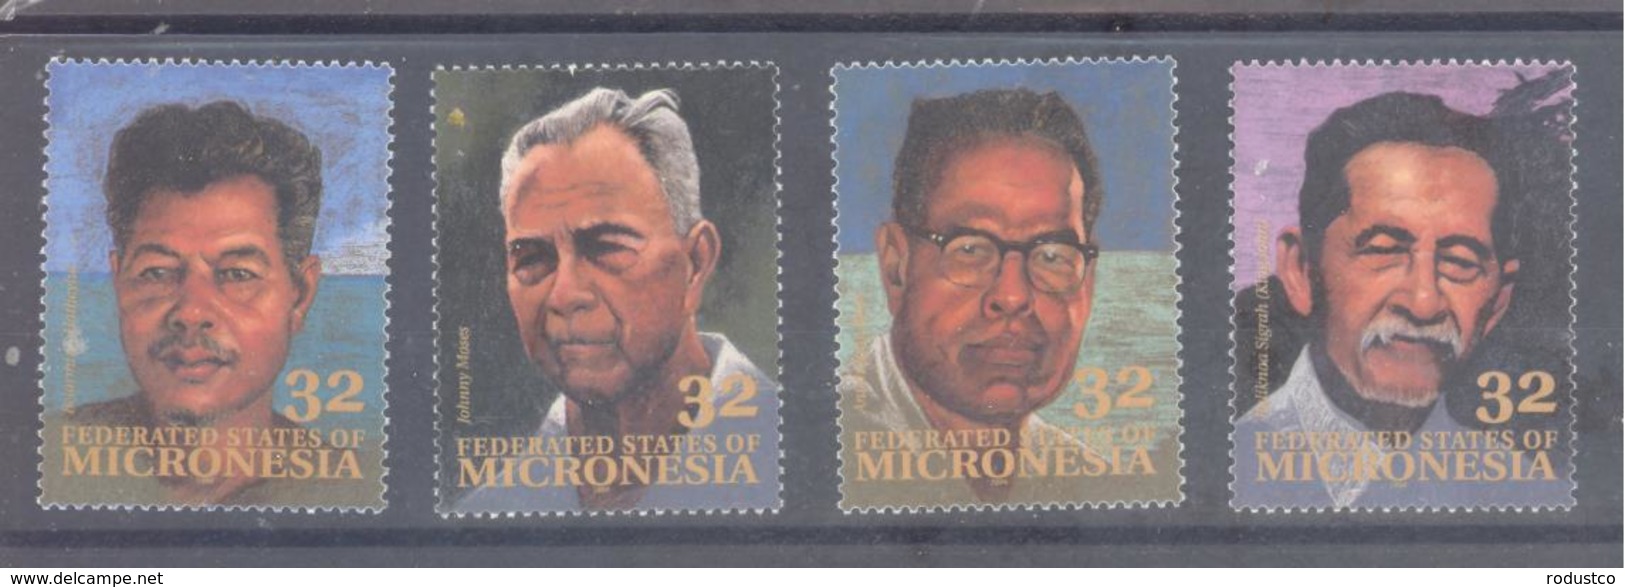 Micronesia   Michel #  397 - 400   Persönlichkeiten - Micronesia